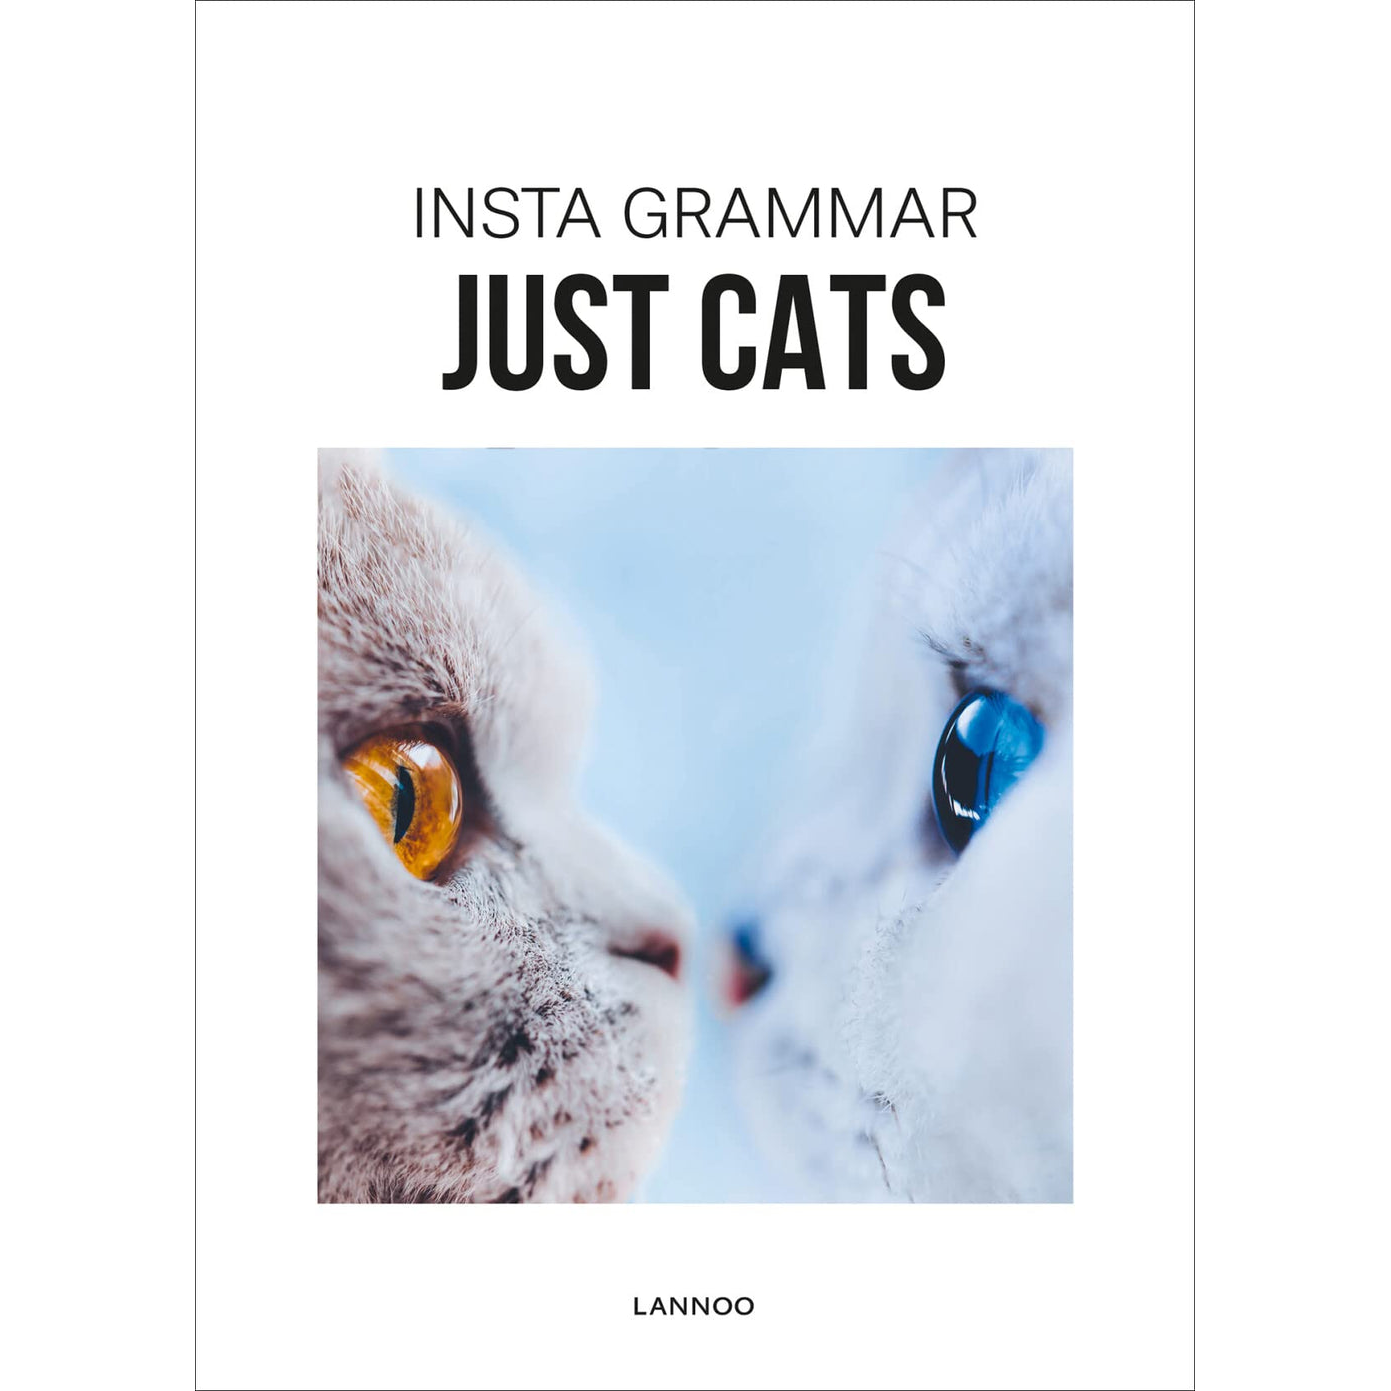 INSTA GRAMMAR JUST CATS